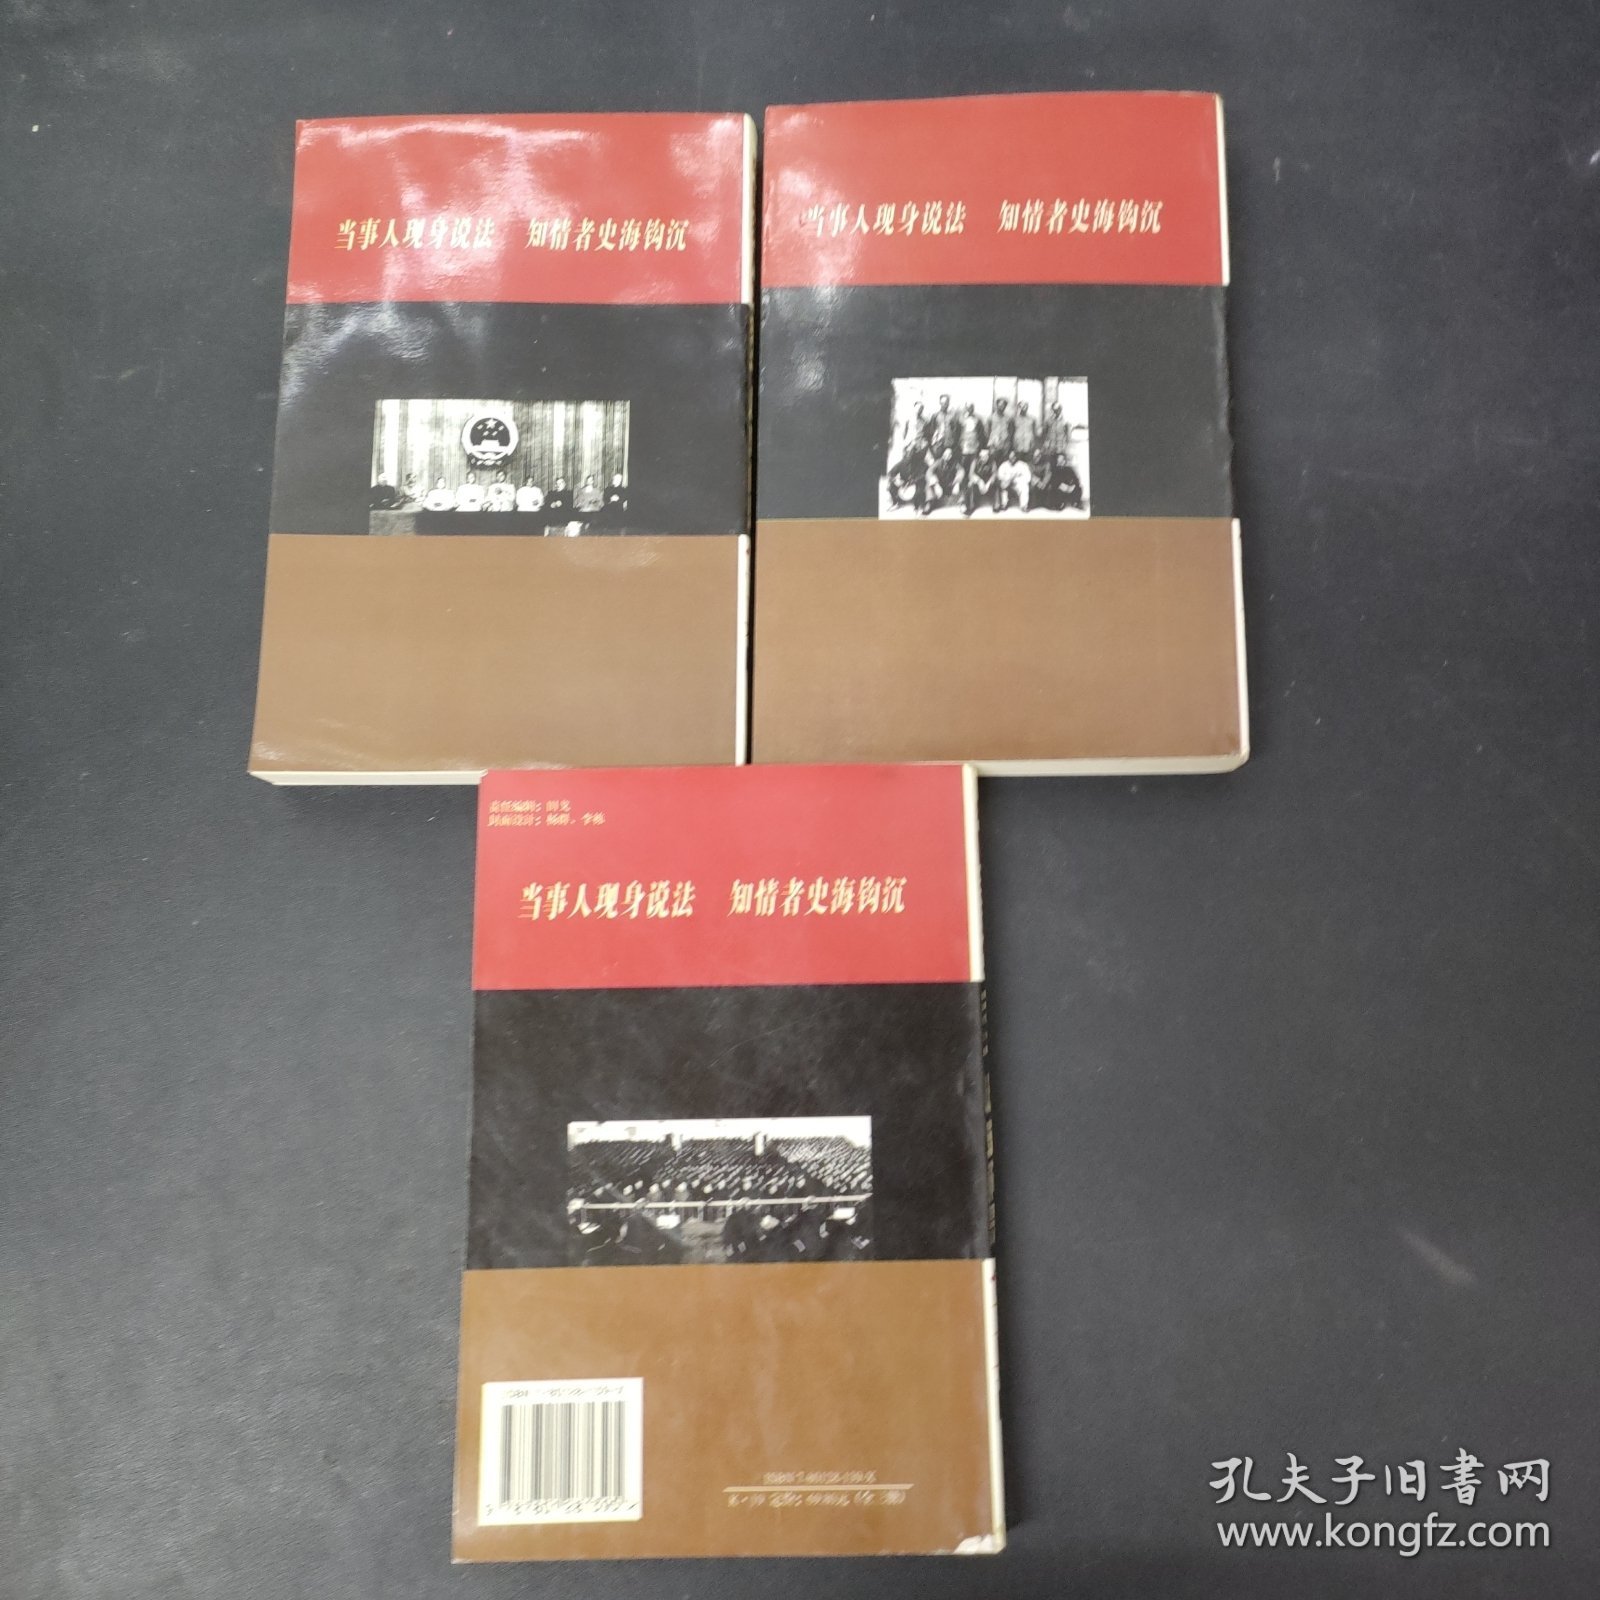 中国共产党若干历史问题写真 上中下册 全三册 3本合售